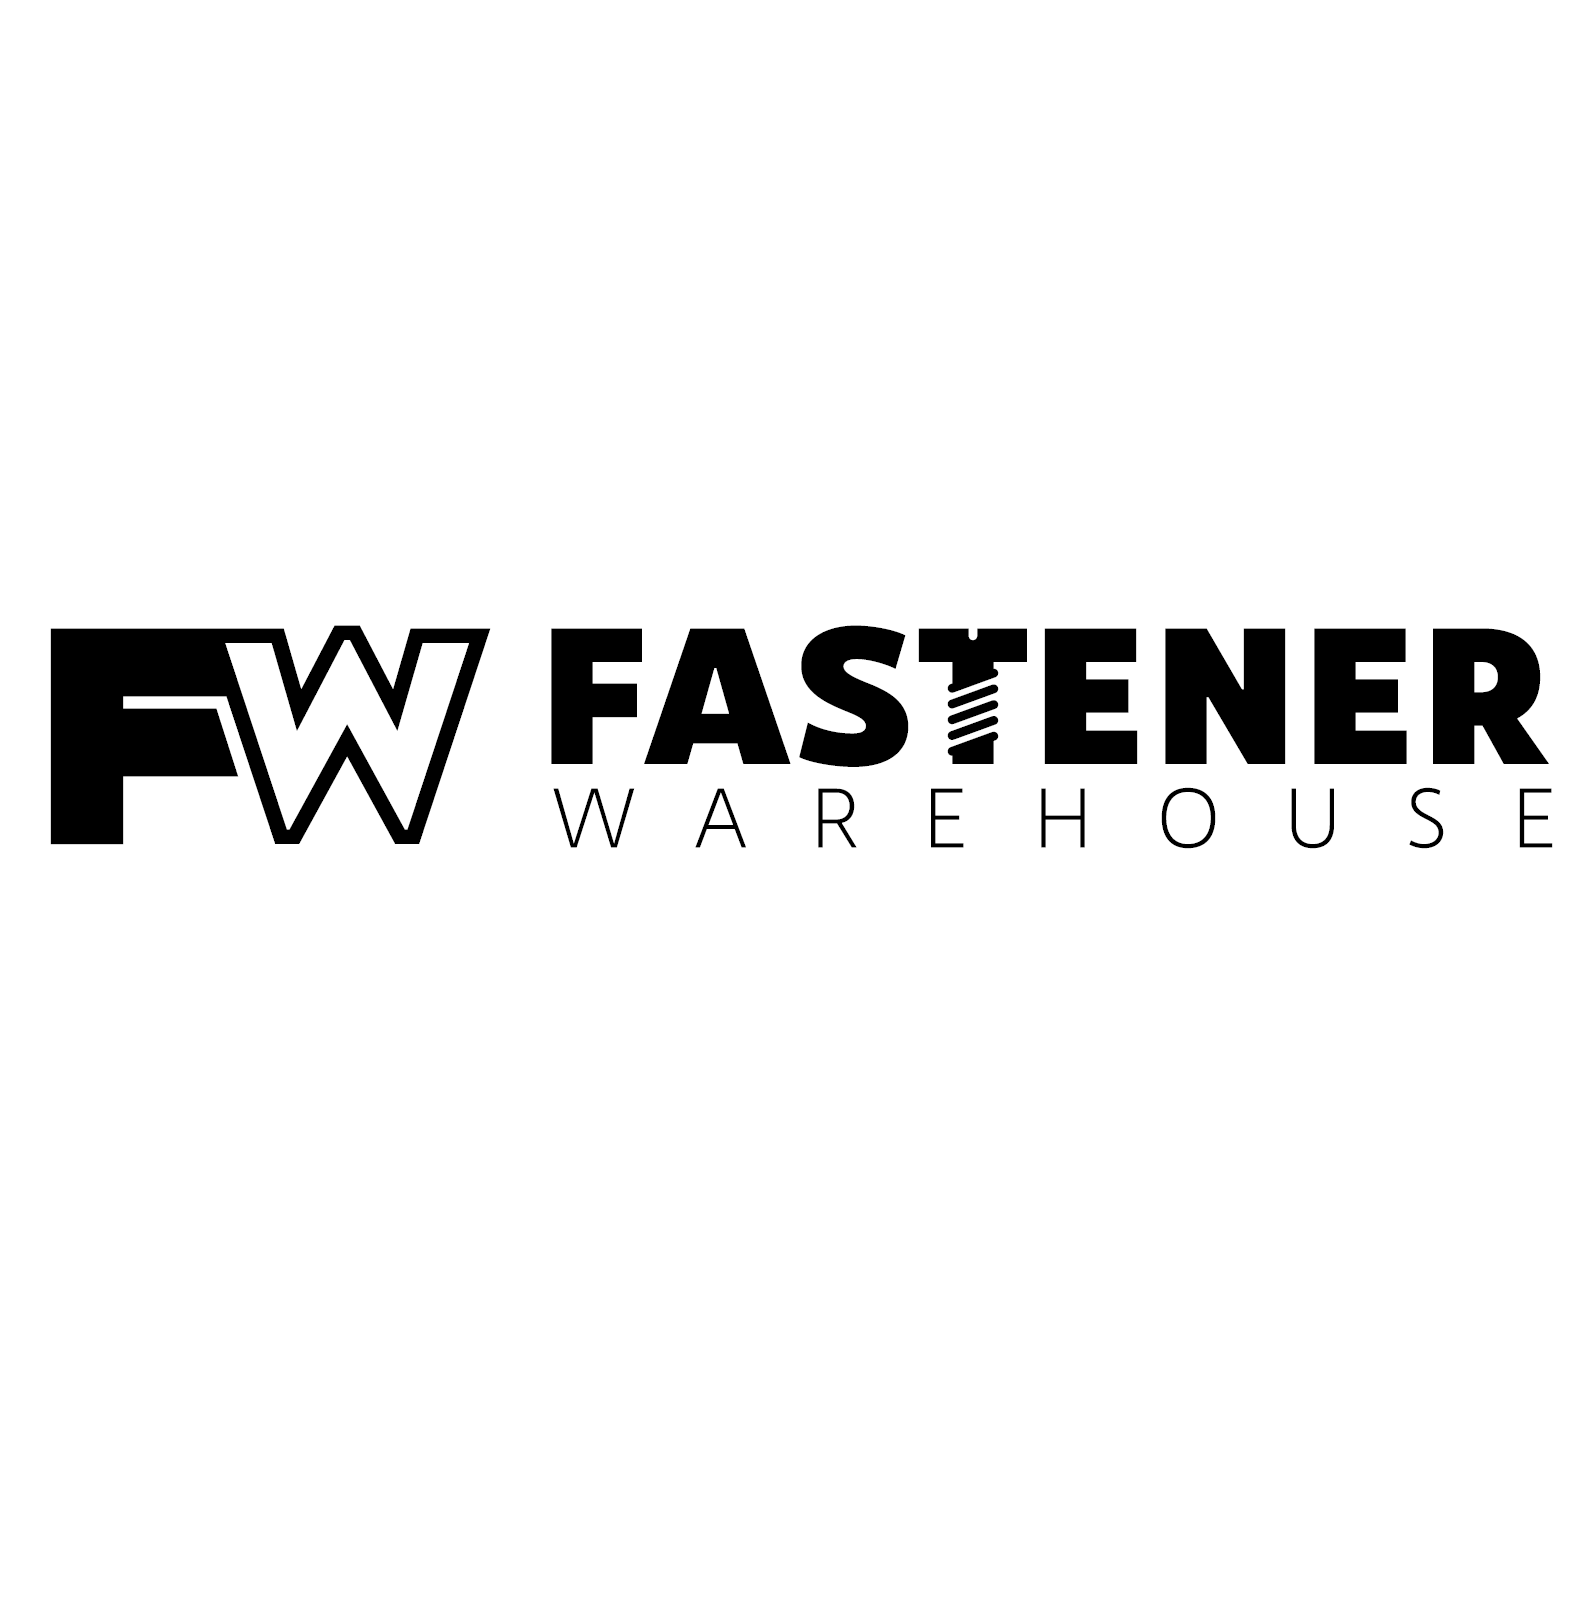 Fastener Warehouse